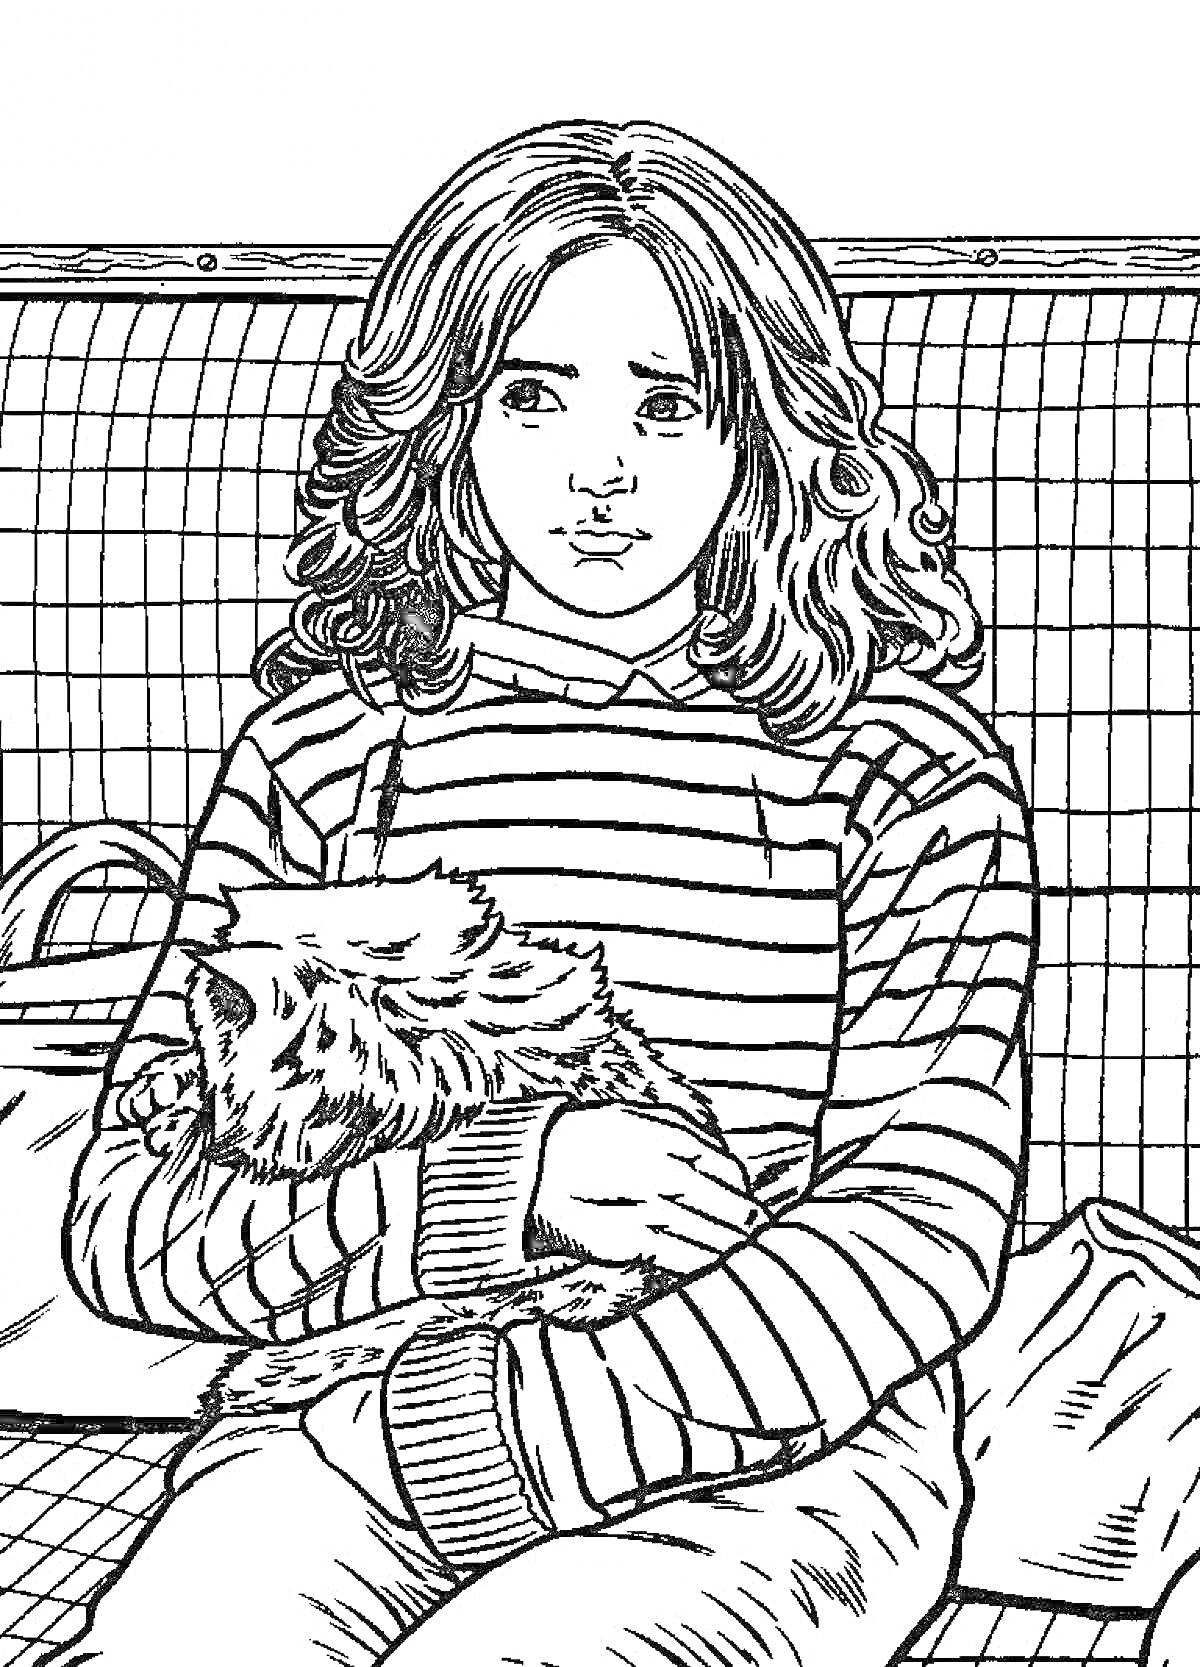 РаскраскаДевочка в полосатом свитере с кошкой в руках на скамейке